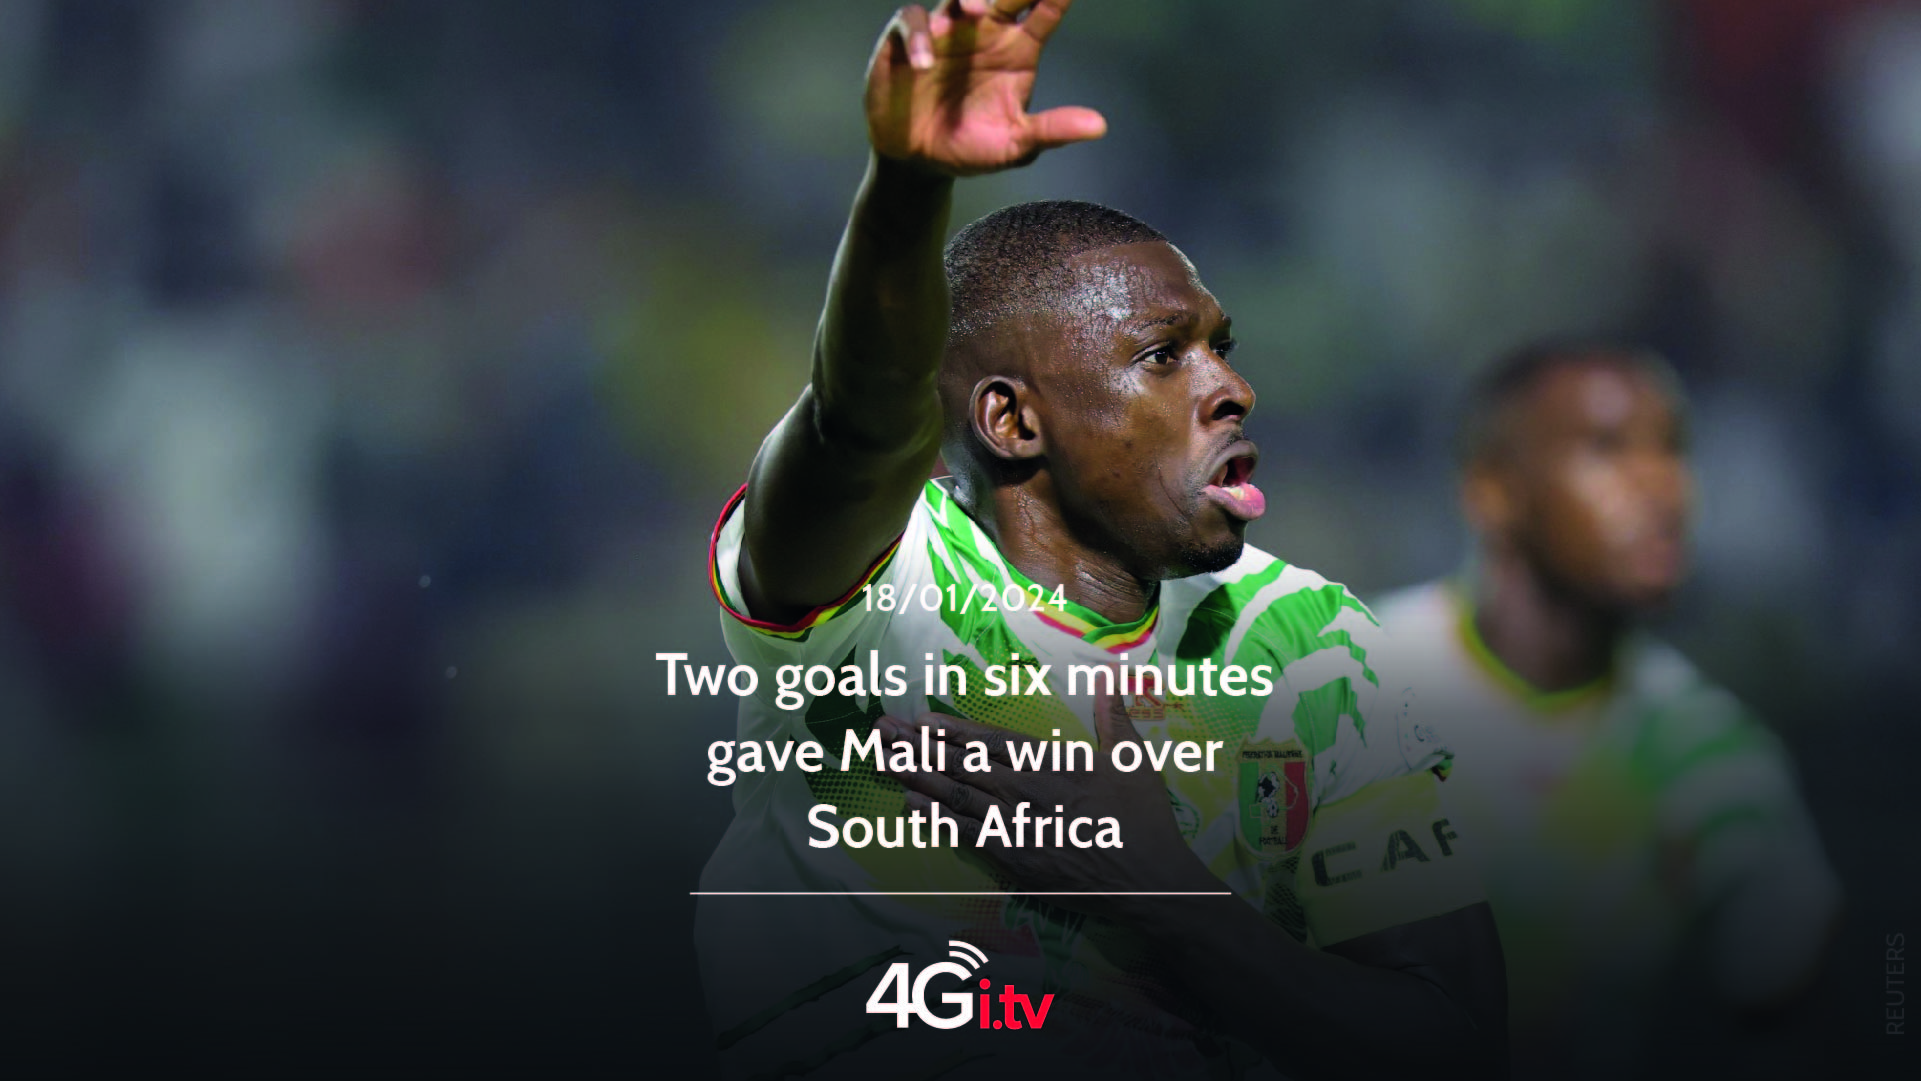 Lee más sobre el artículo Two goals in six minutes gave Mali a win over South Africa